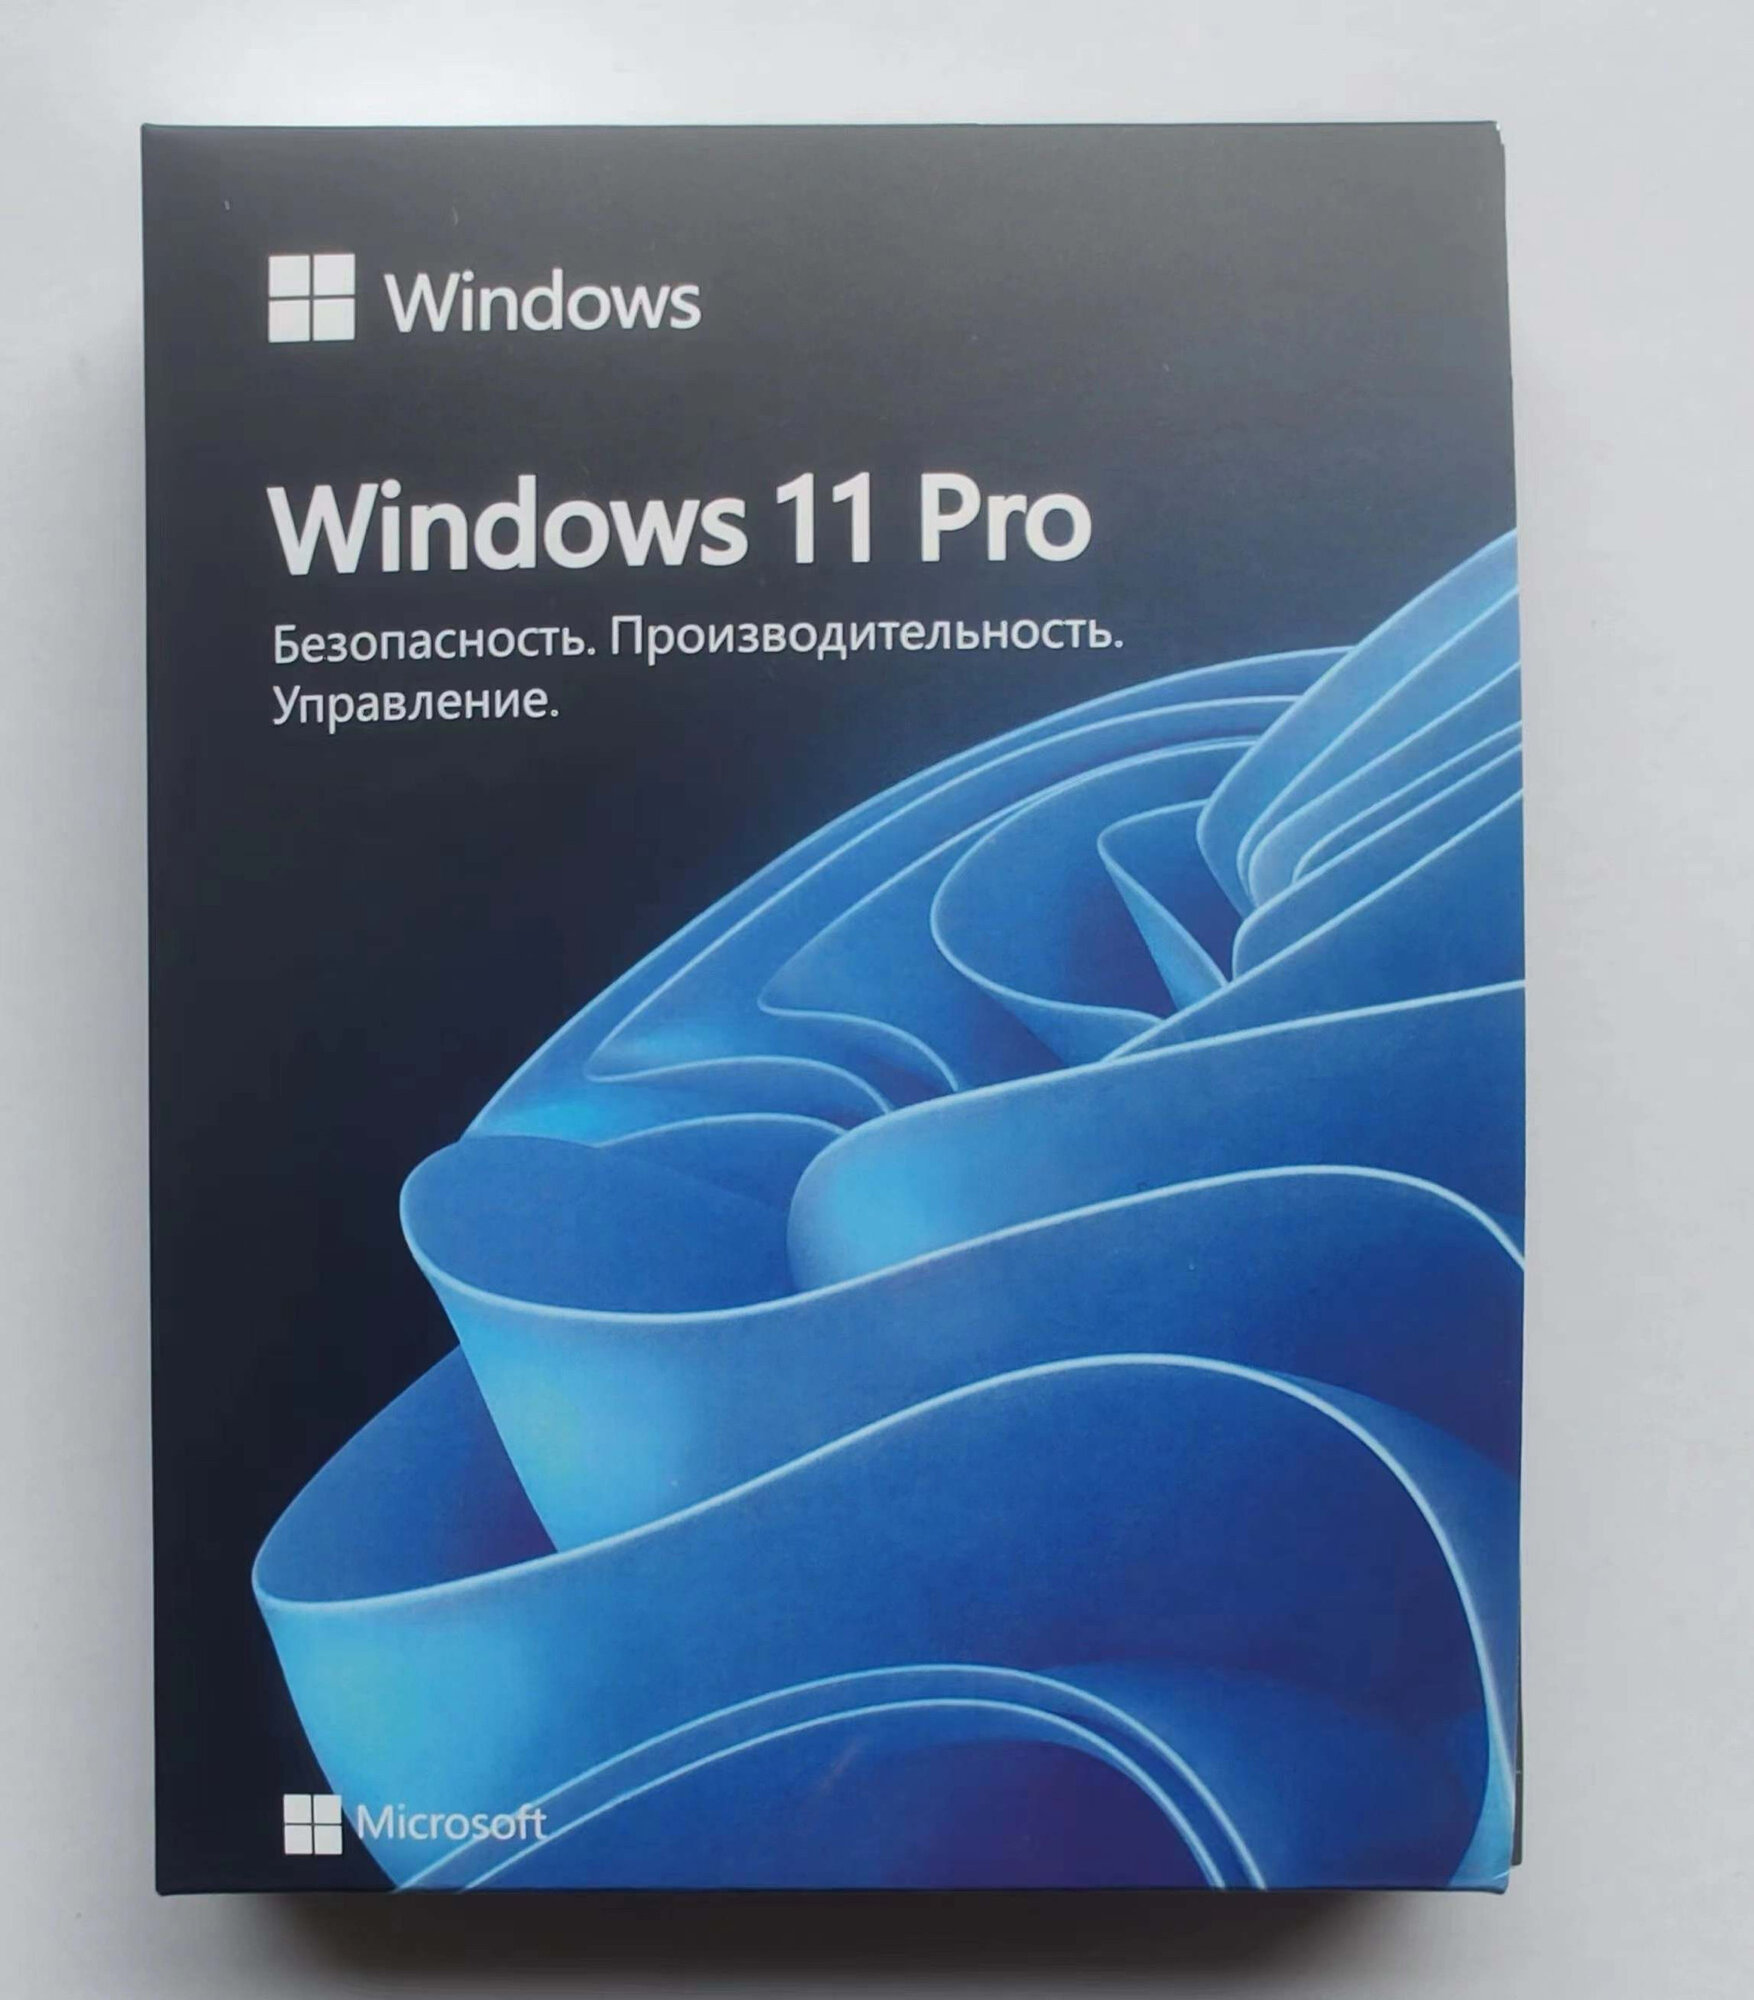 Windows 11 Pro RU BOX (Коробочная версия с USB Flash)